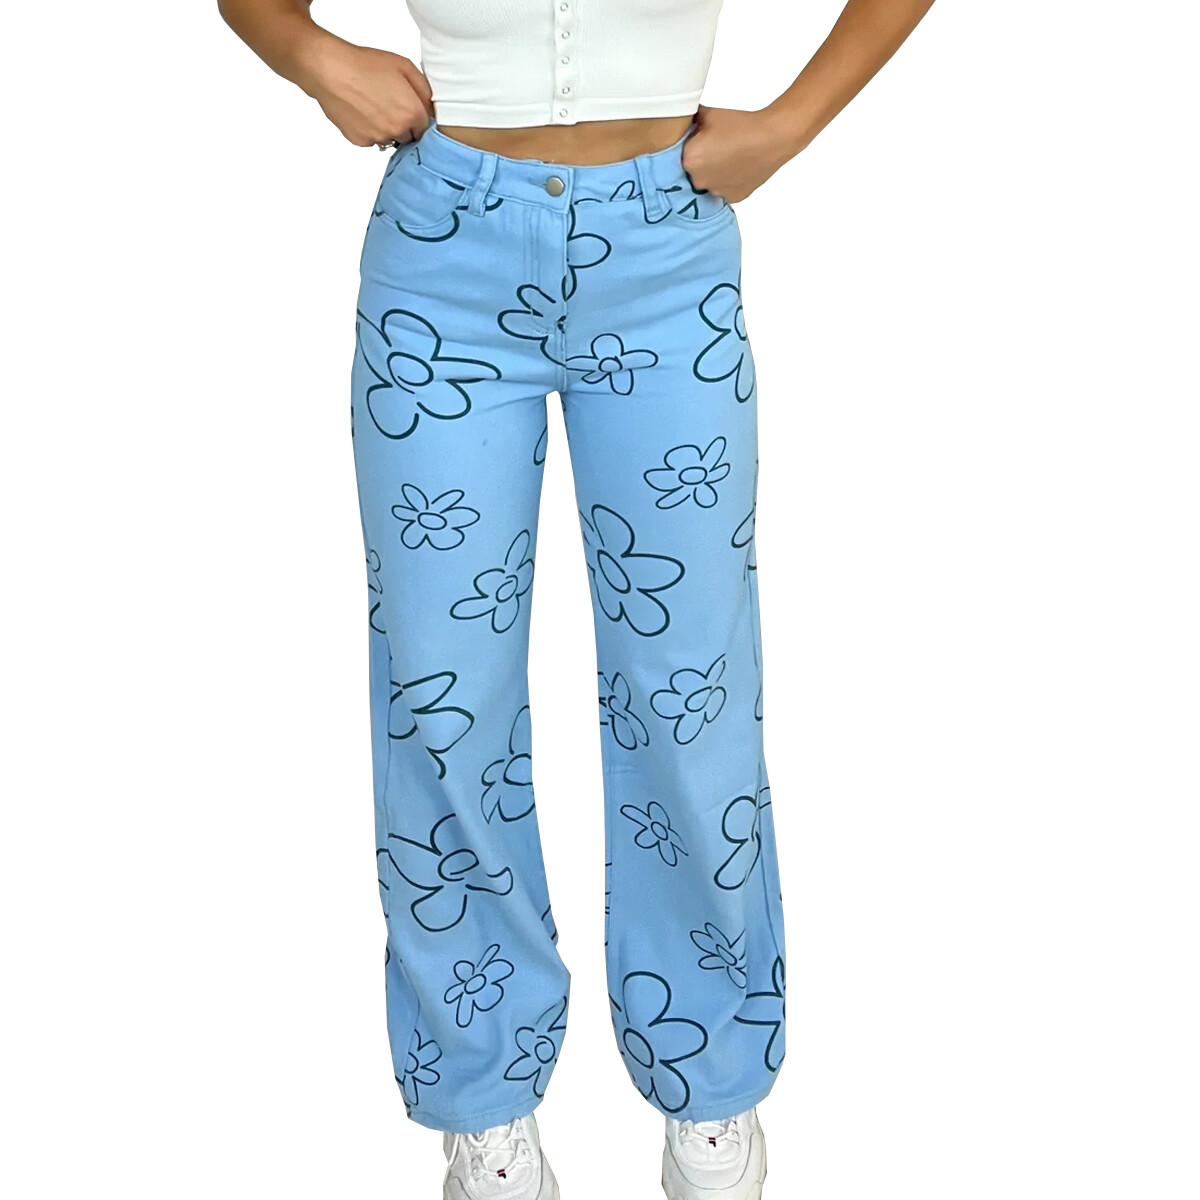 Pantalon de dama - BRP1137BLUE - BLUE 